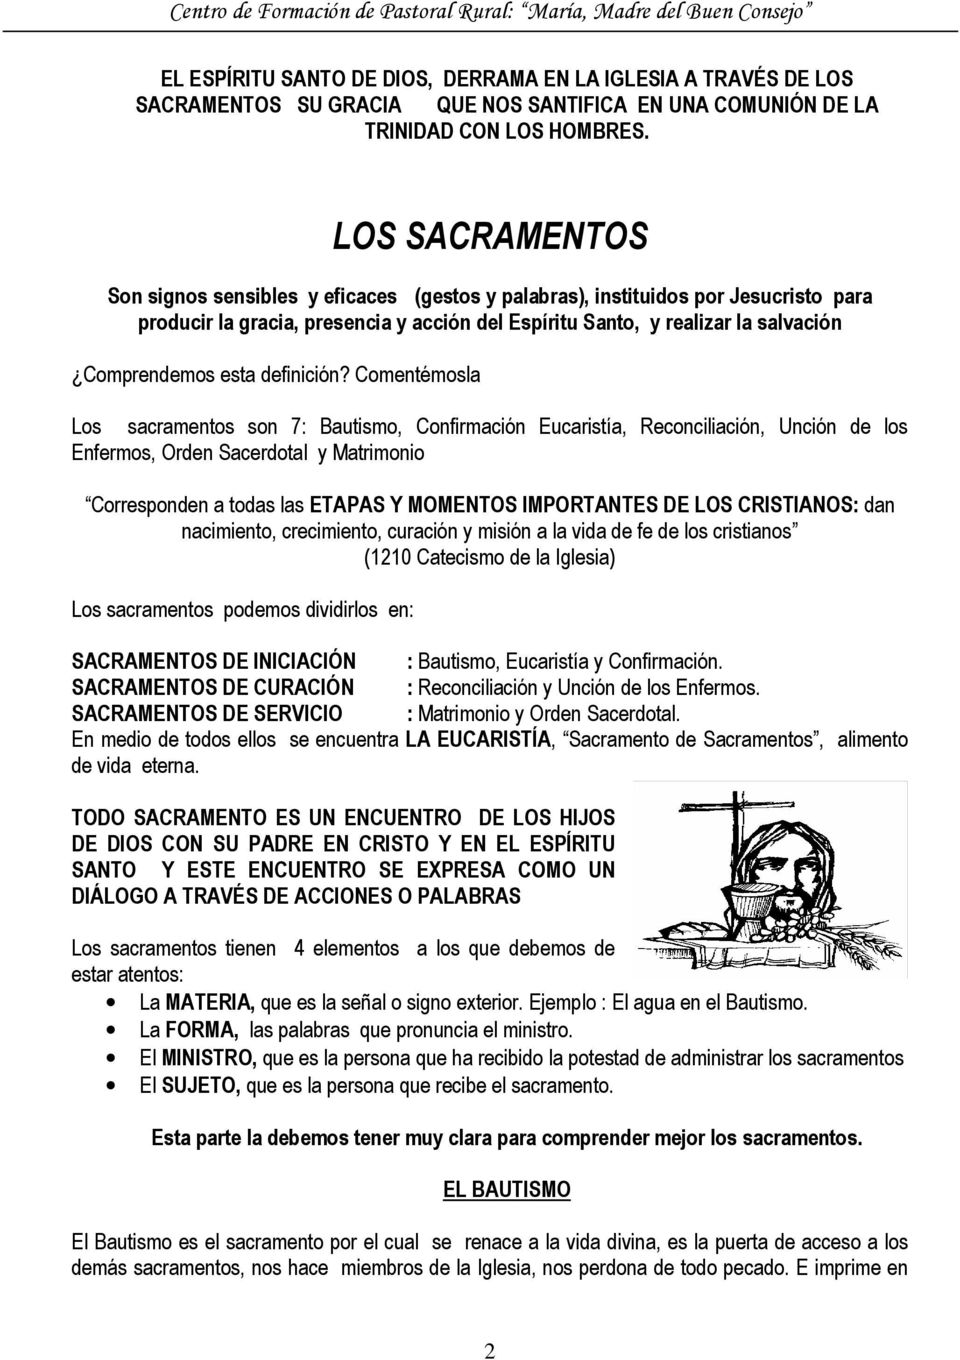 Centro comercial Recuperar moco LOS SACRAMENTOS DE LA IGLESIA - PDF Descargar libre